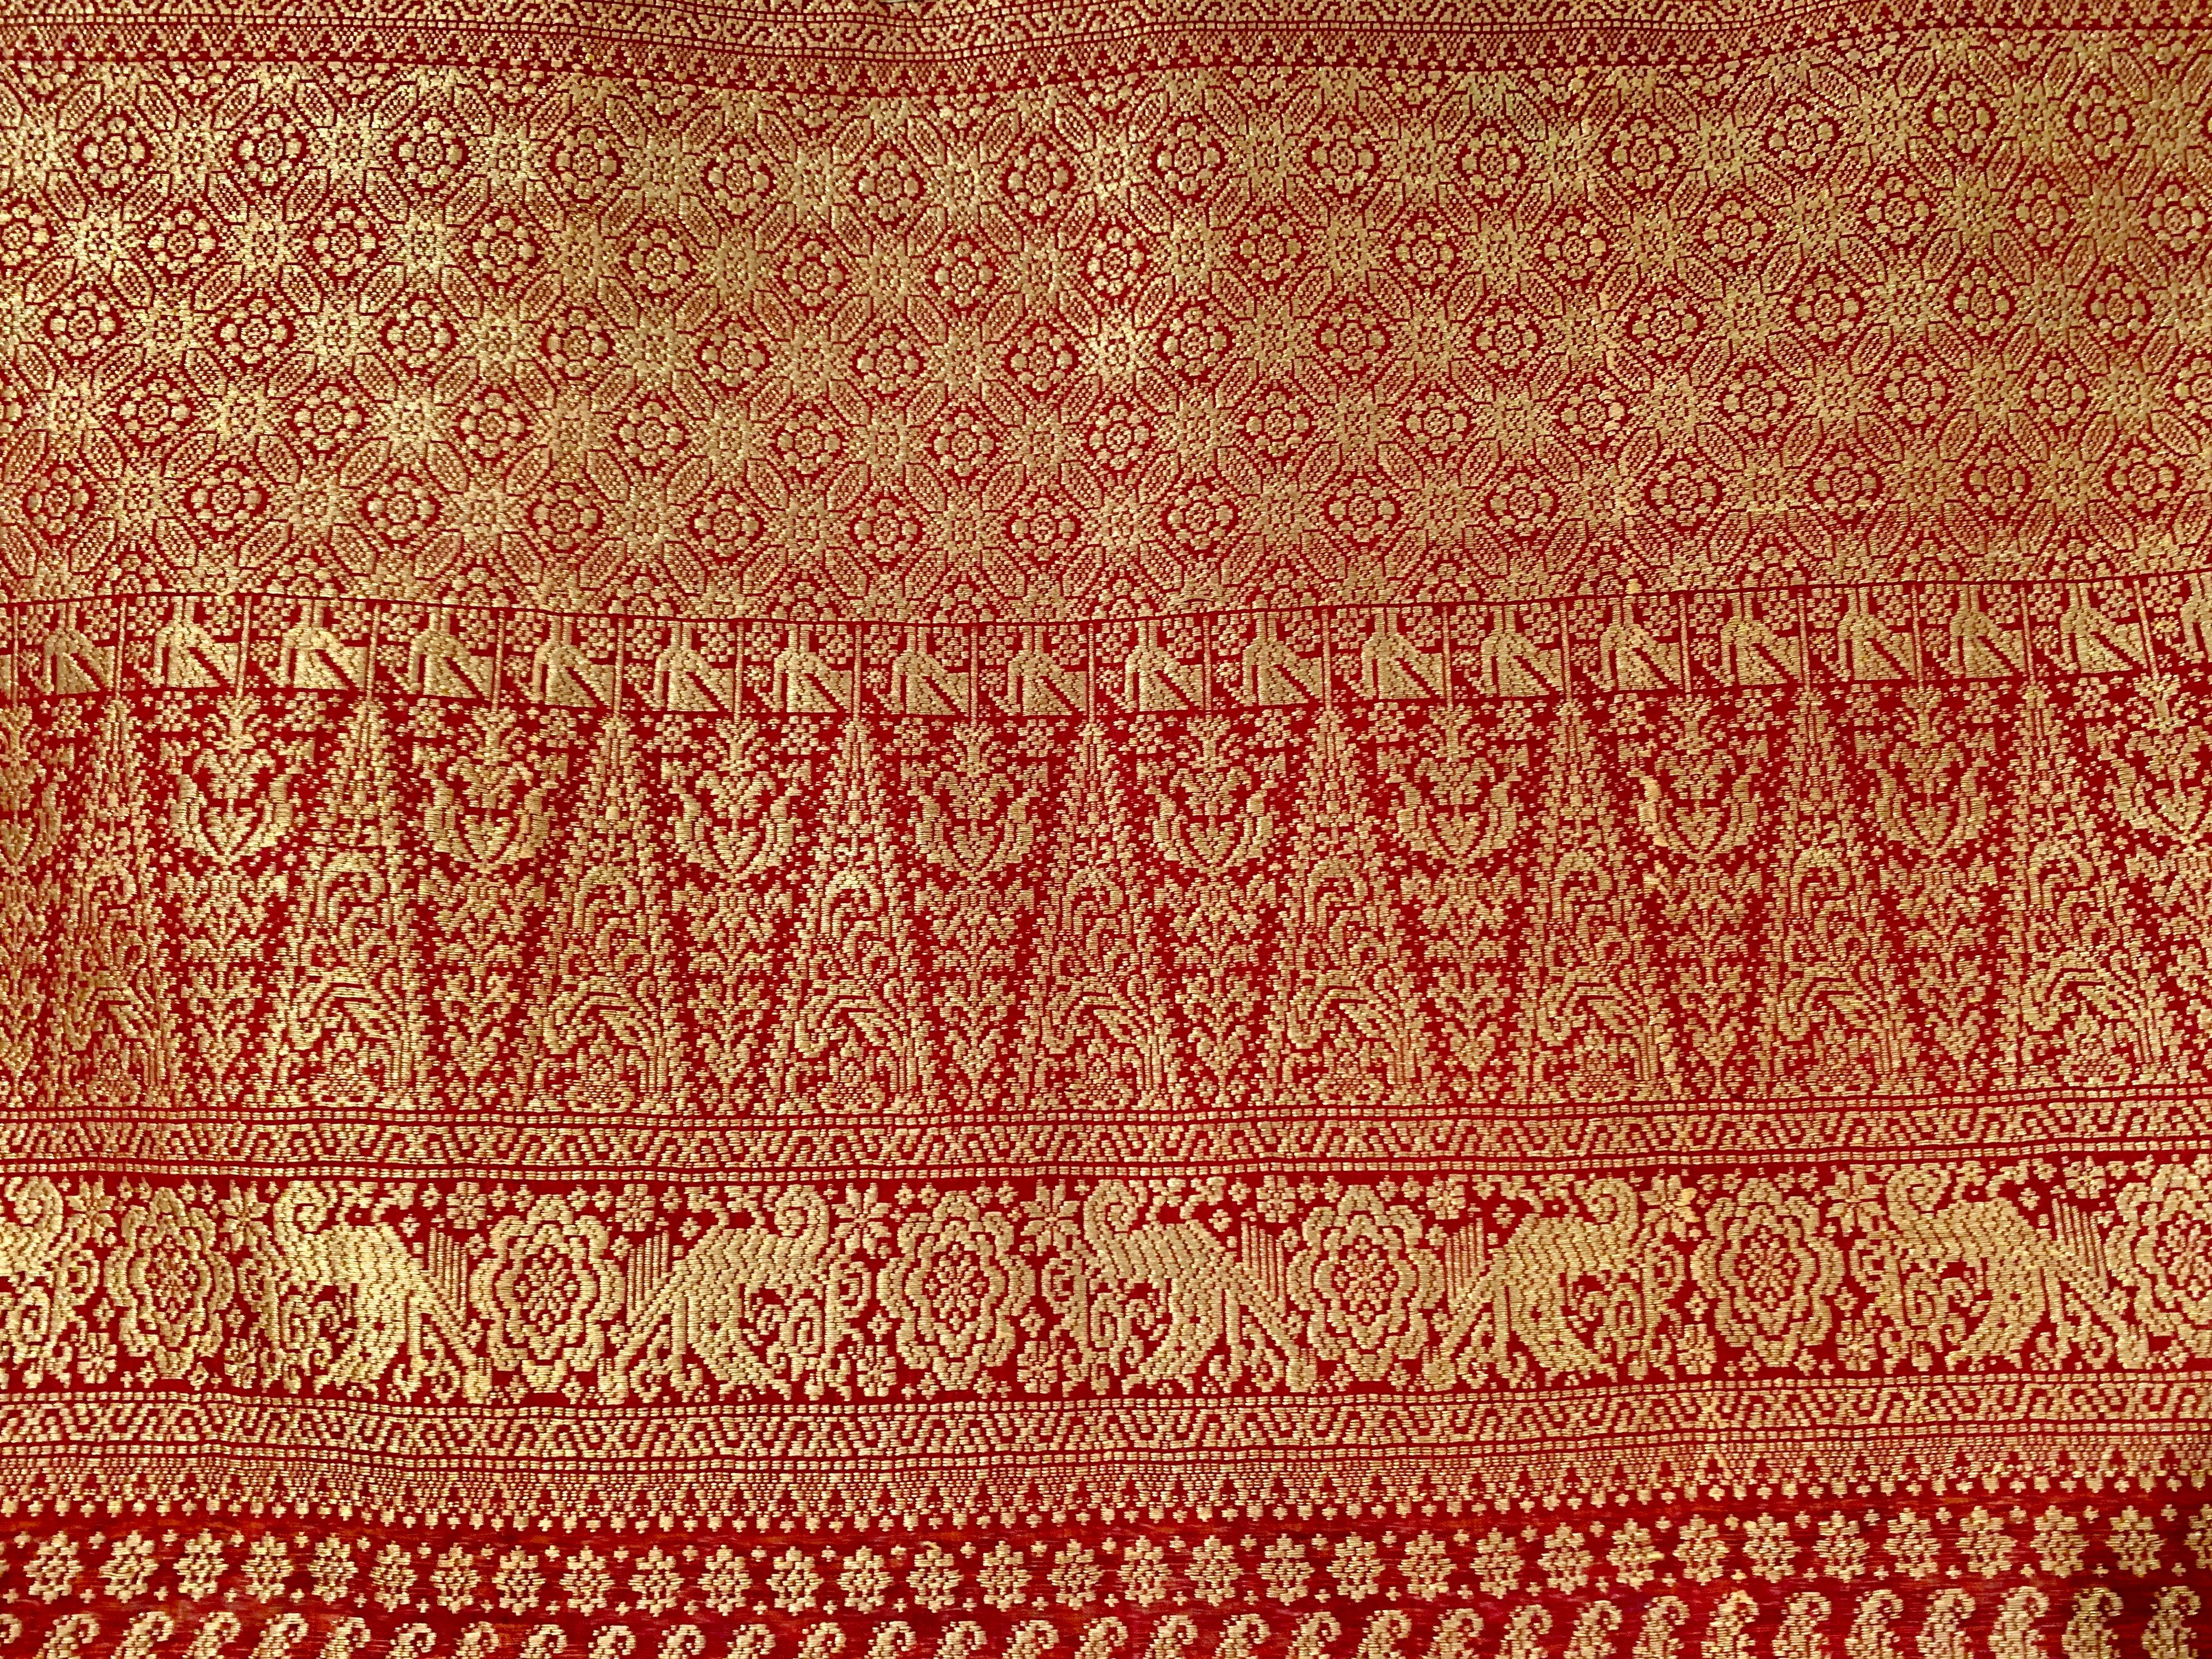 Indonesian Kain Limar Songket, Silk Ikat, Metallic Thread, circa 1900, Palembang, Sumatra For Sale